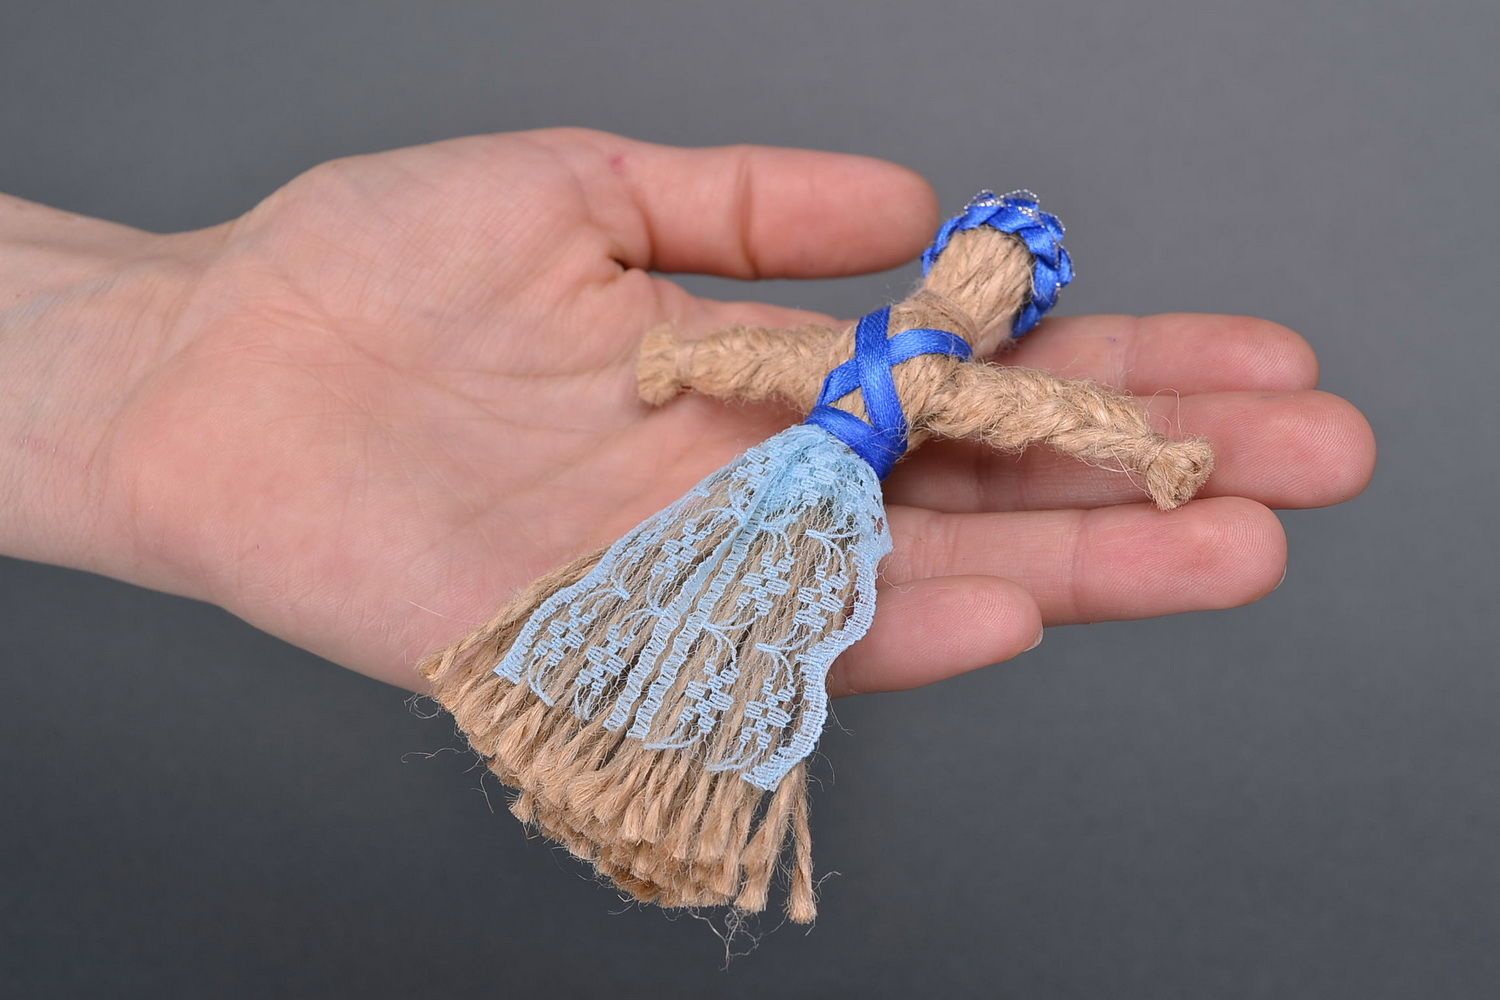 Bambola etnica di stoffa fatta a mano amuleto talismano giocattolo slavo
 foto 4